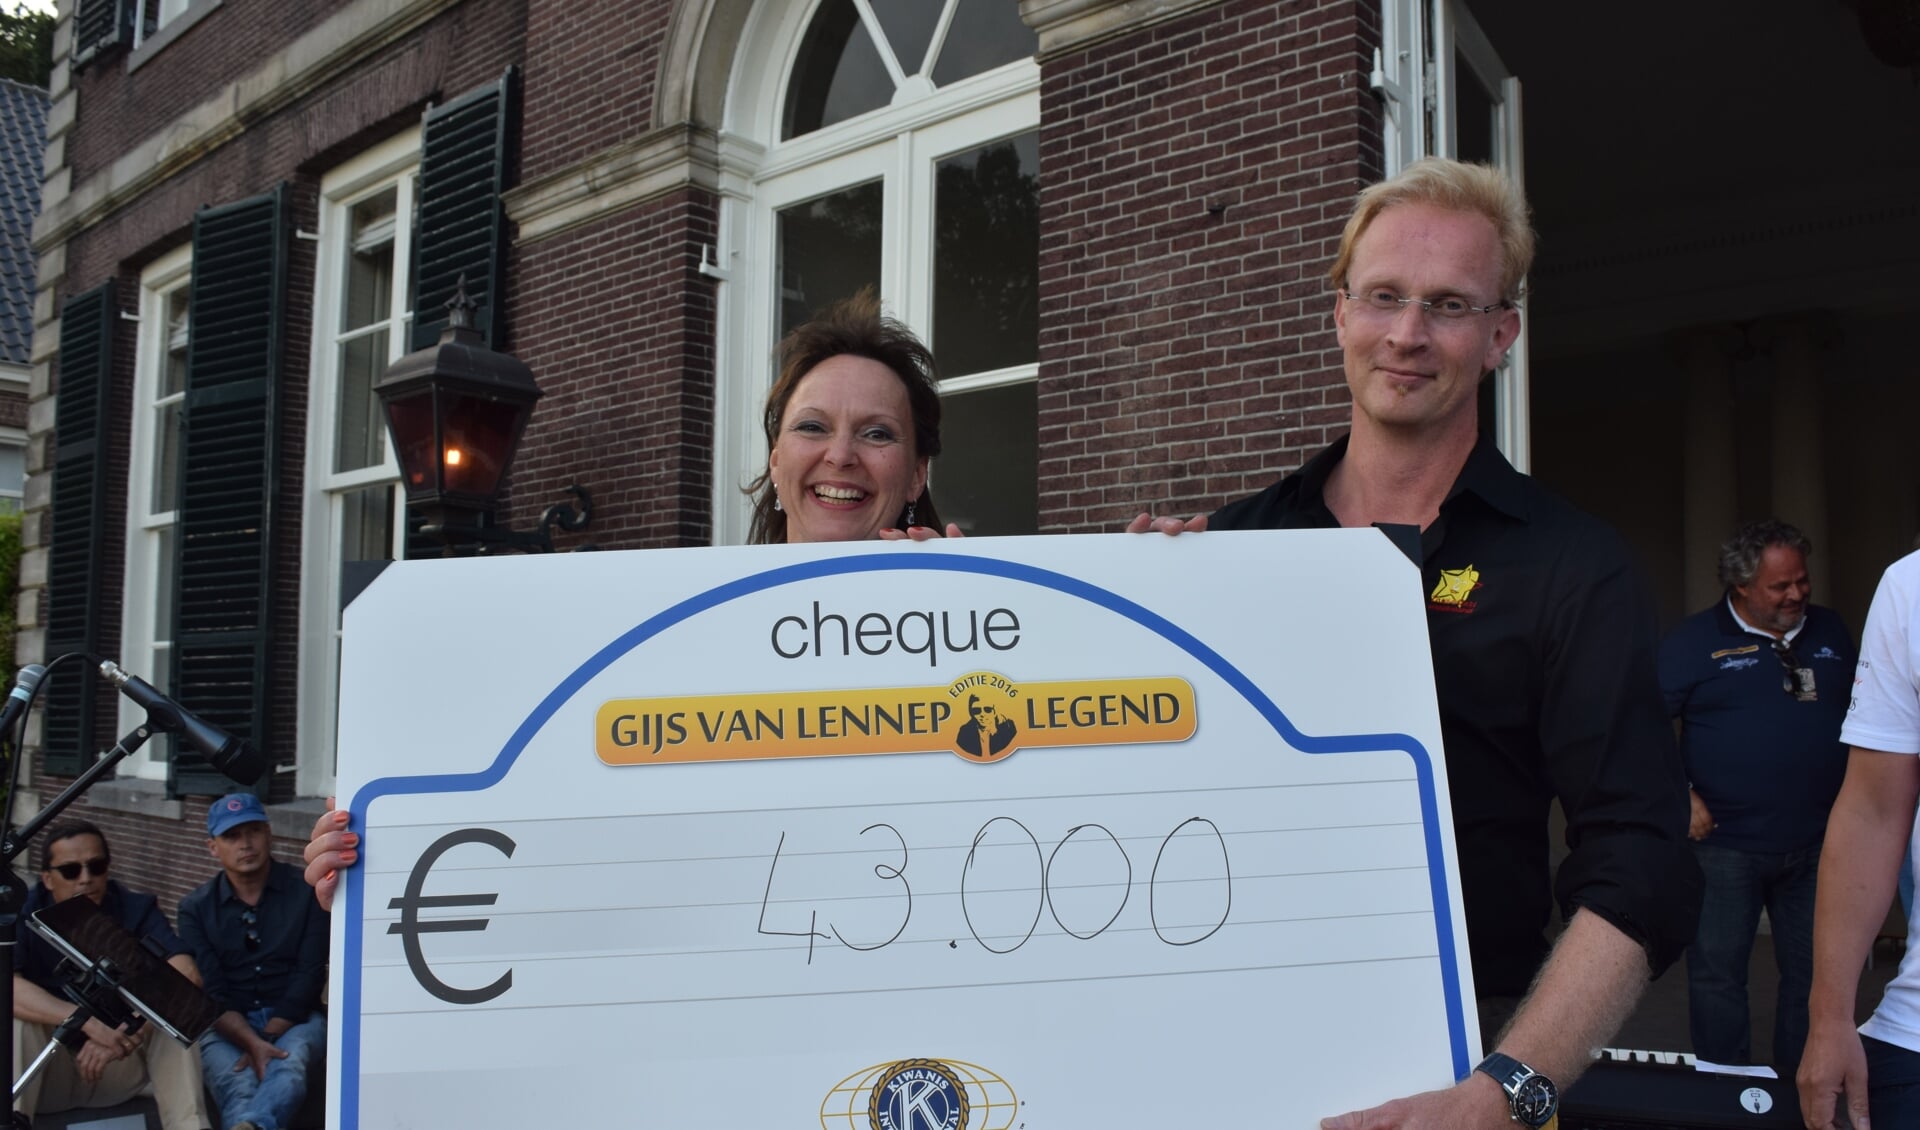  Met de veiling, inschrijfgelden en sponsoring werd in 2016 uiteindelijk bij de Gijs van Lennep Legend het recordbedrag van 43000 euro opgehaald voor ZonnaCare uit Den Dolder.